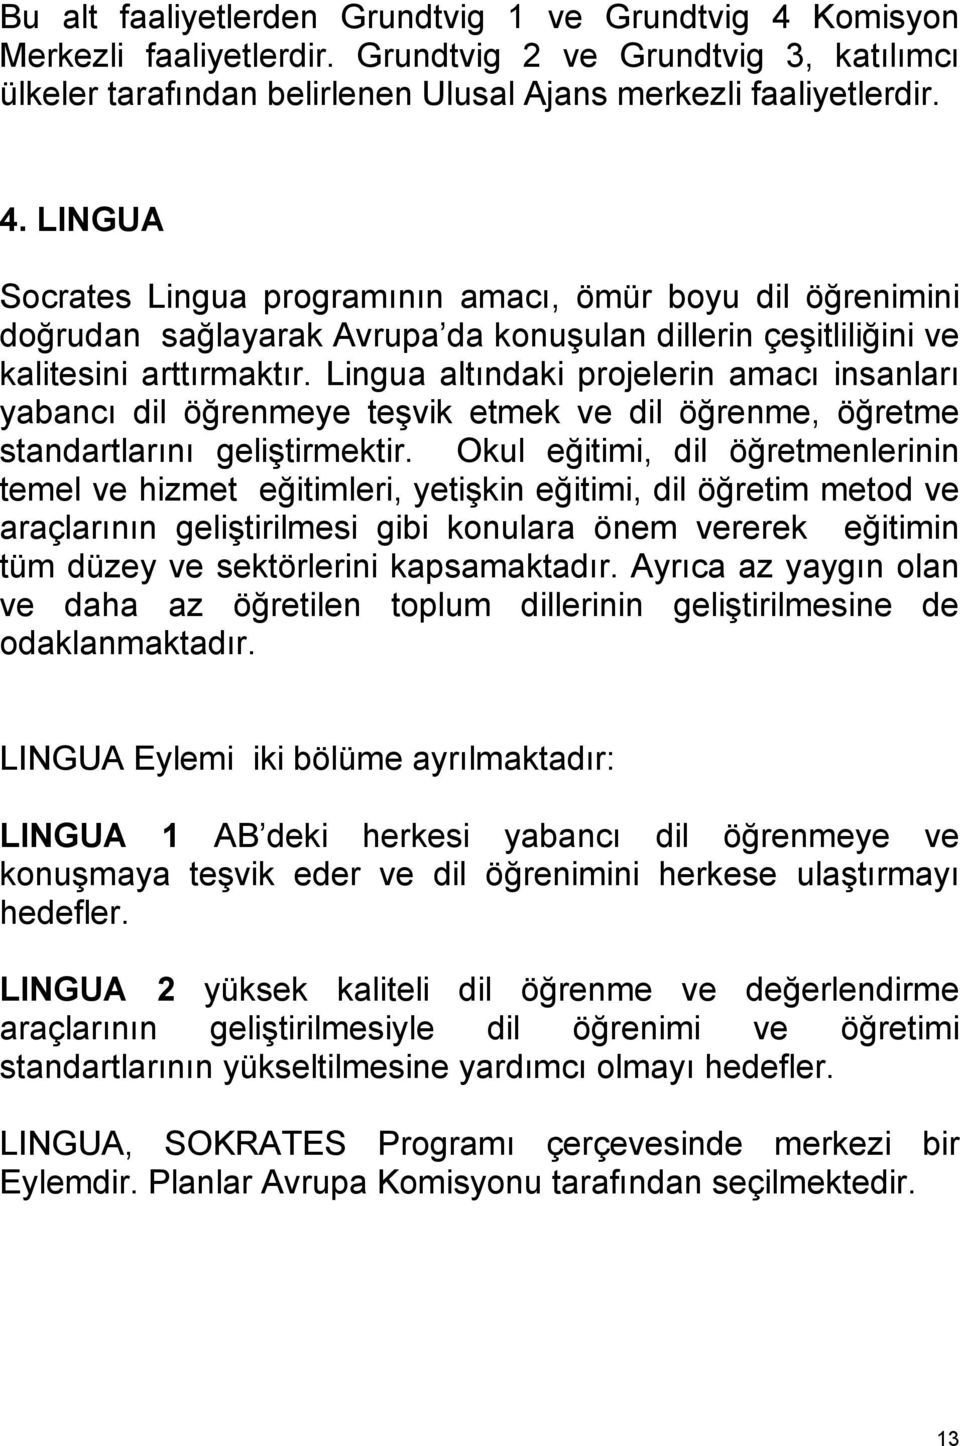 LINGUA Socrates Lingua programının amacı, ömür boyu dil öğrenimini doğrudan sağlayarak Avrupa da konuşulan dillerin çeşitliliğini ve kalitesini arttırmaktır.